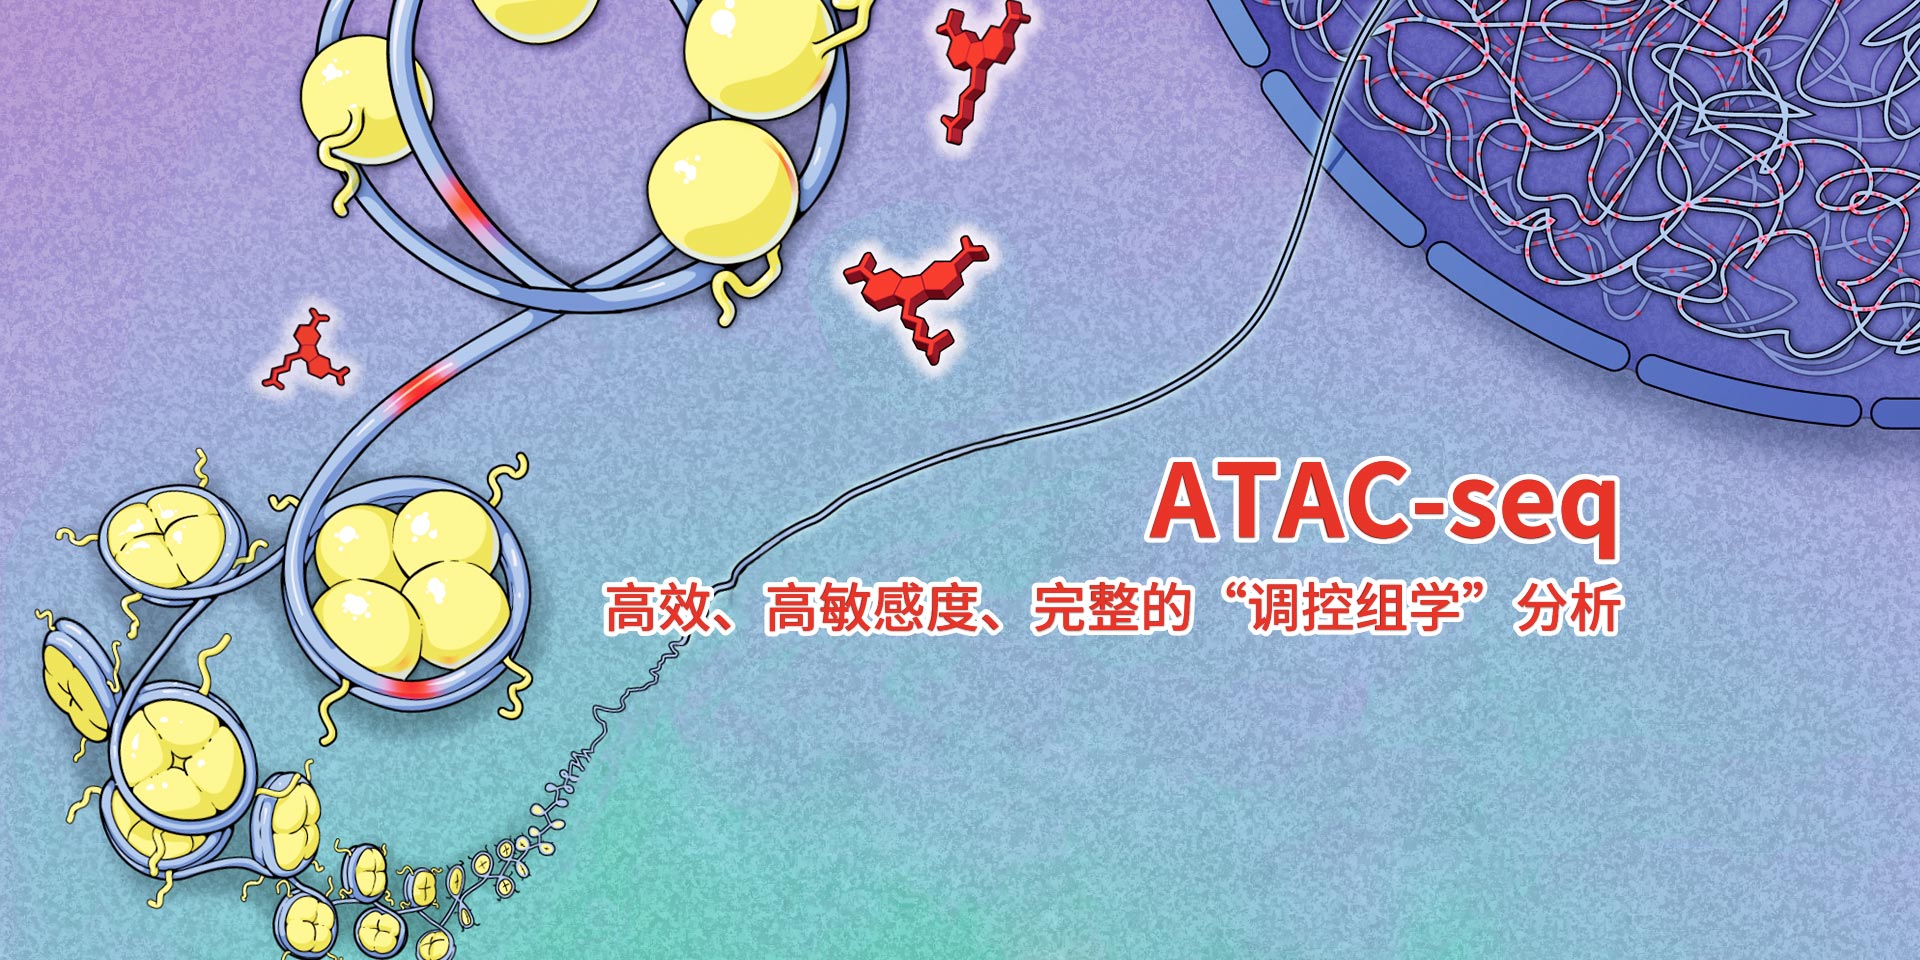 广州表观生物科技有限公司-69-8轮播图